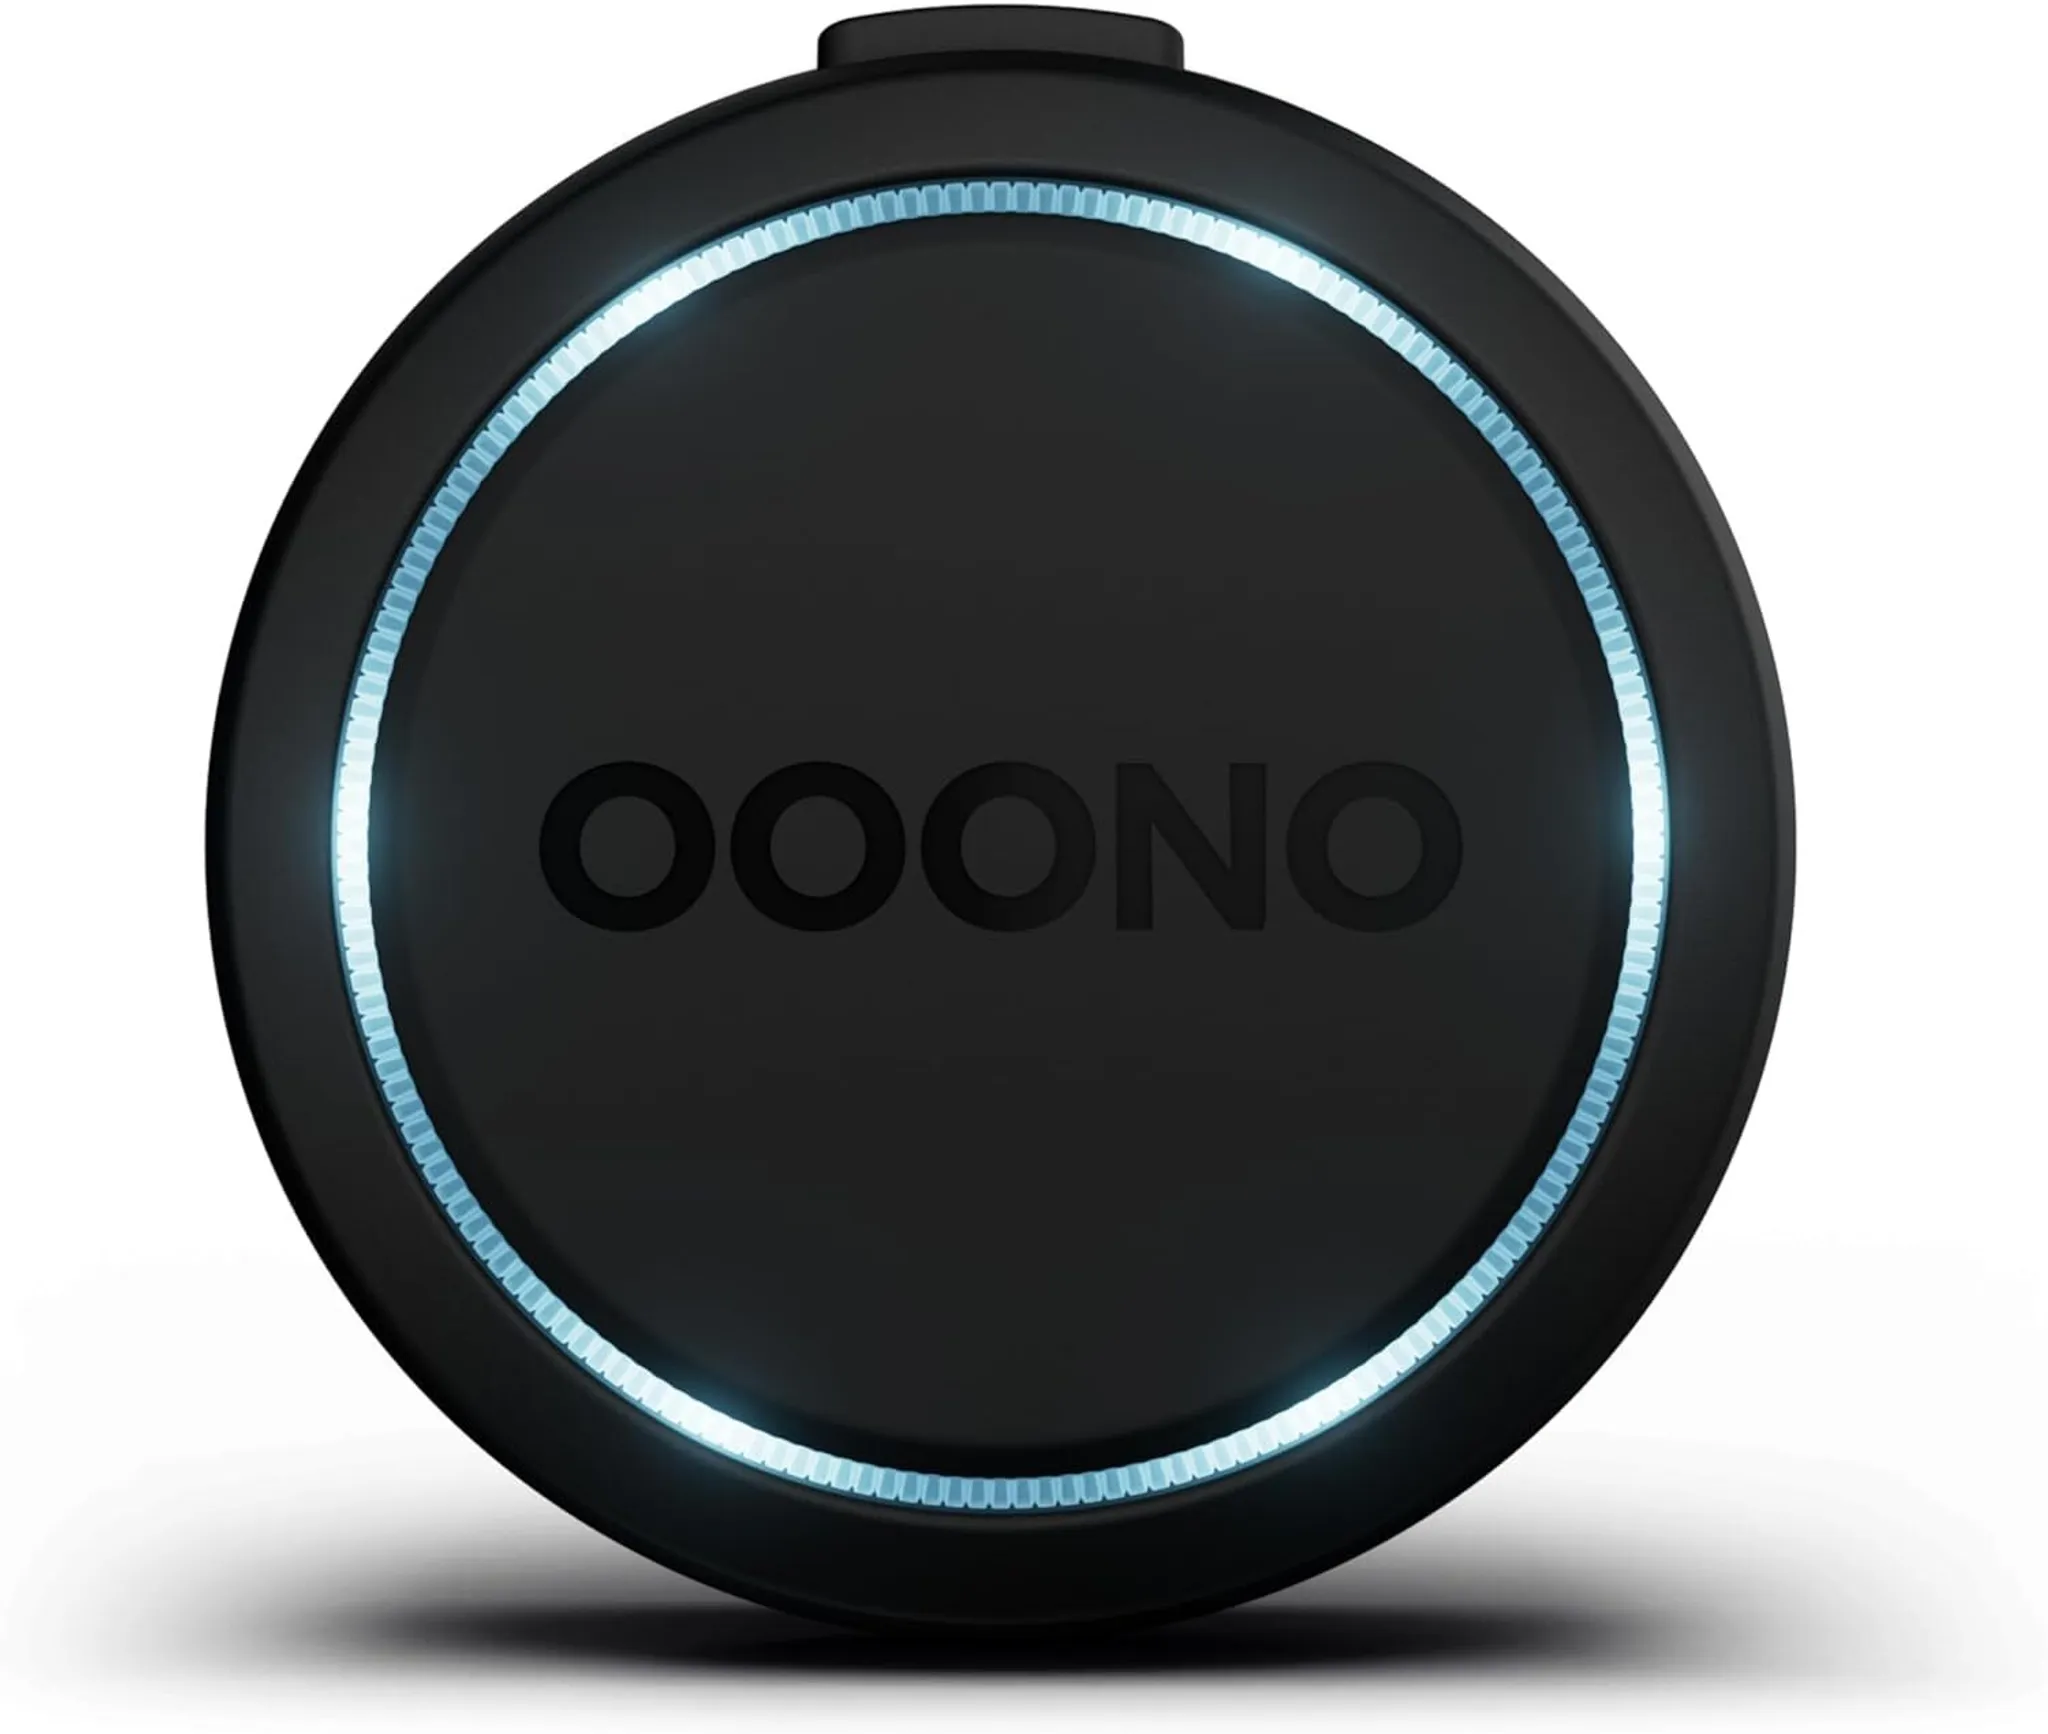 OOONO Mount für Smartphones / Verkehrsalarm. Universal für